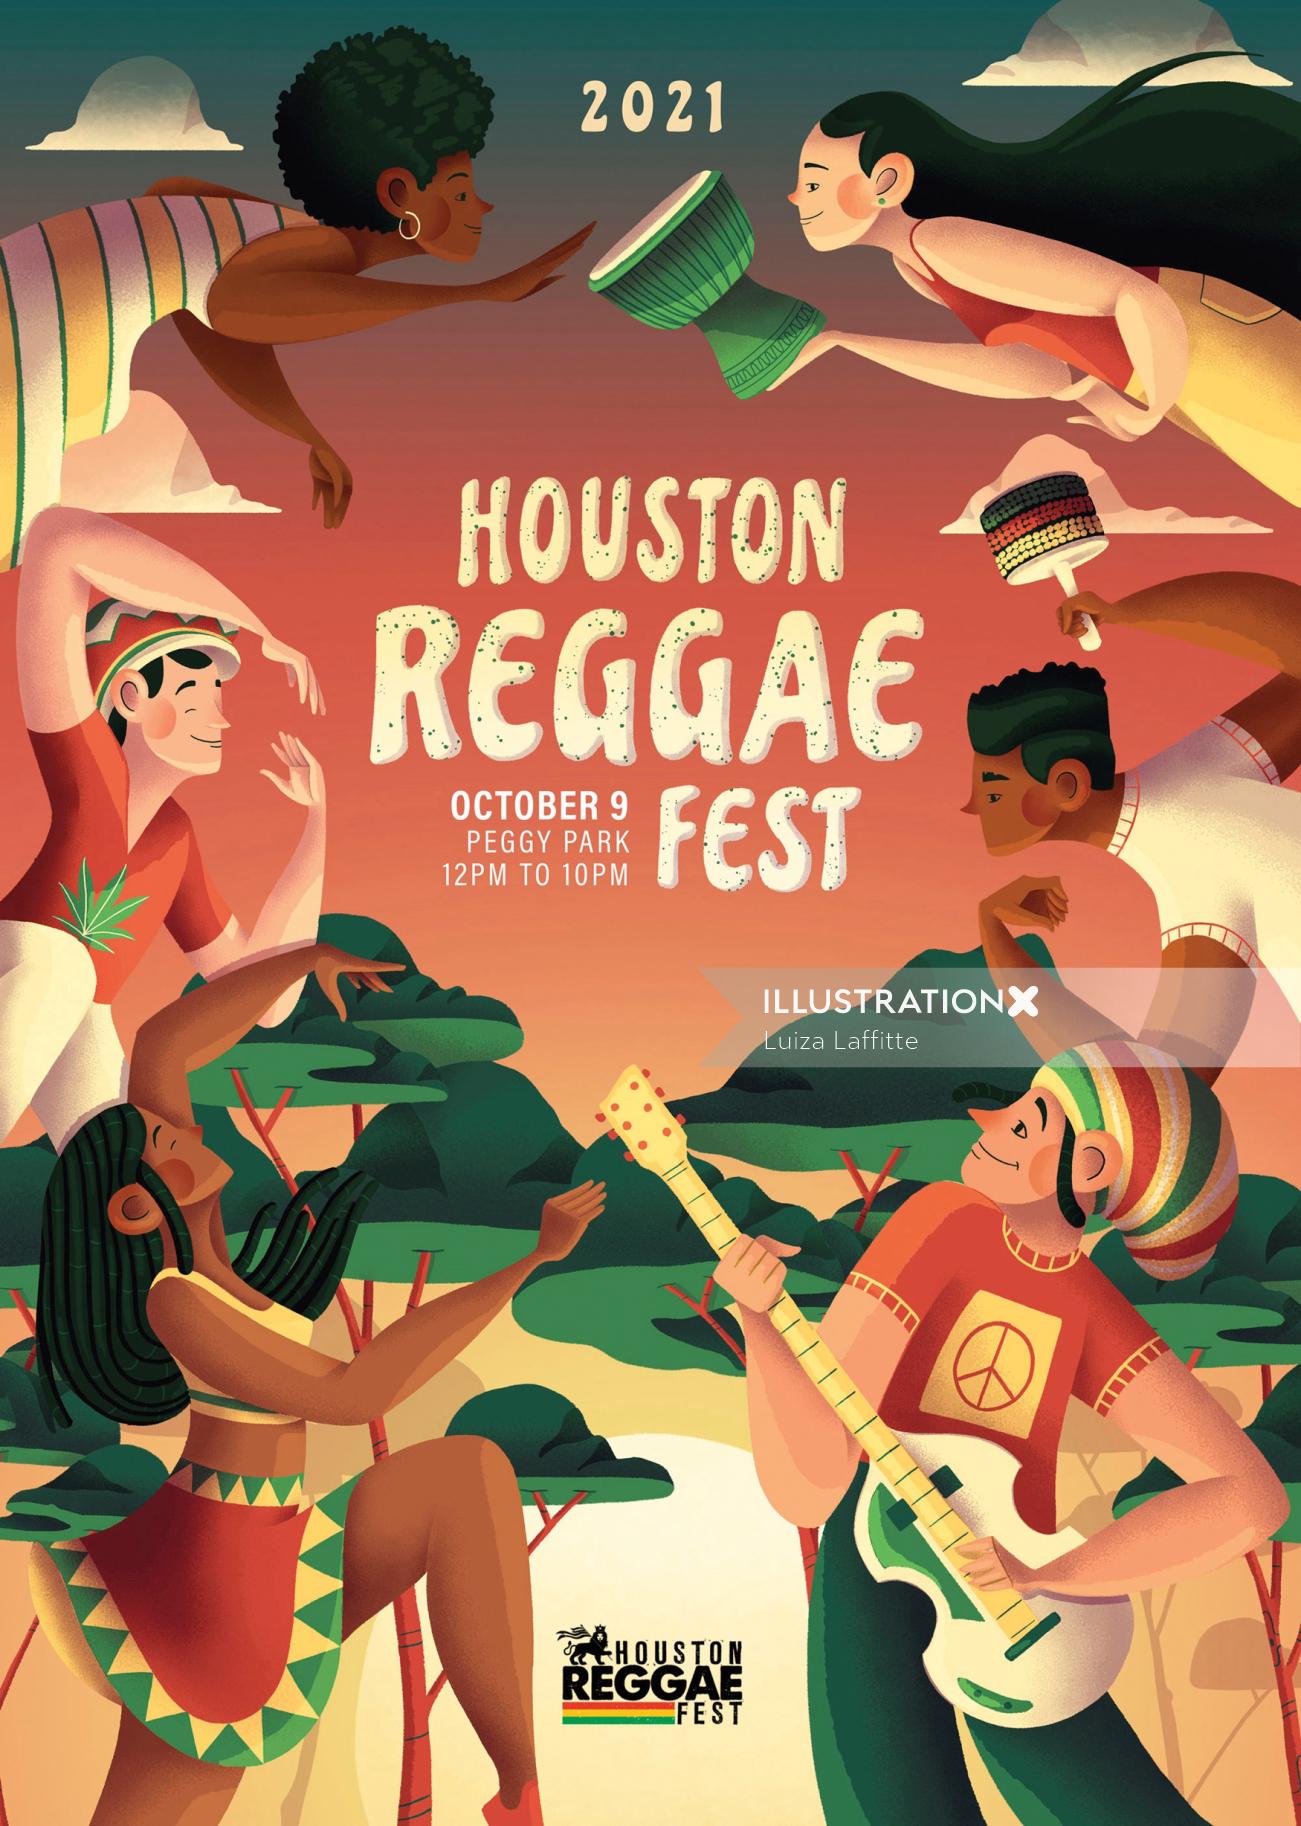 Houston Reggae Festival